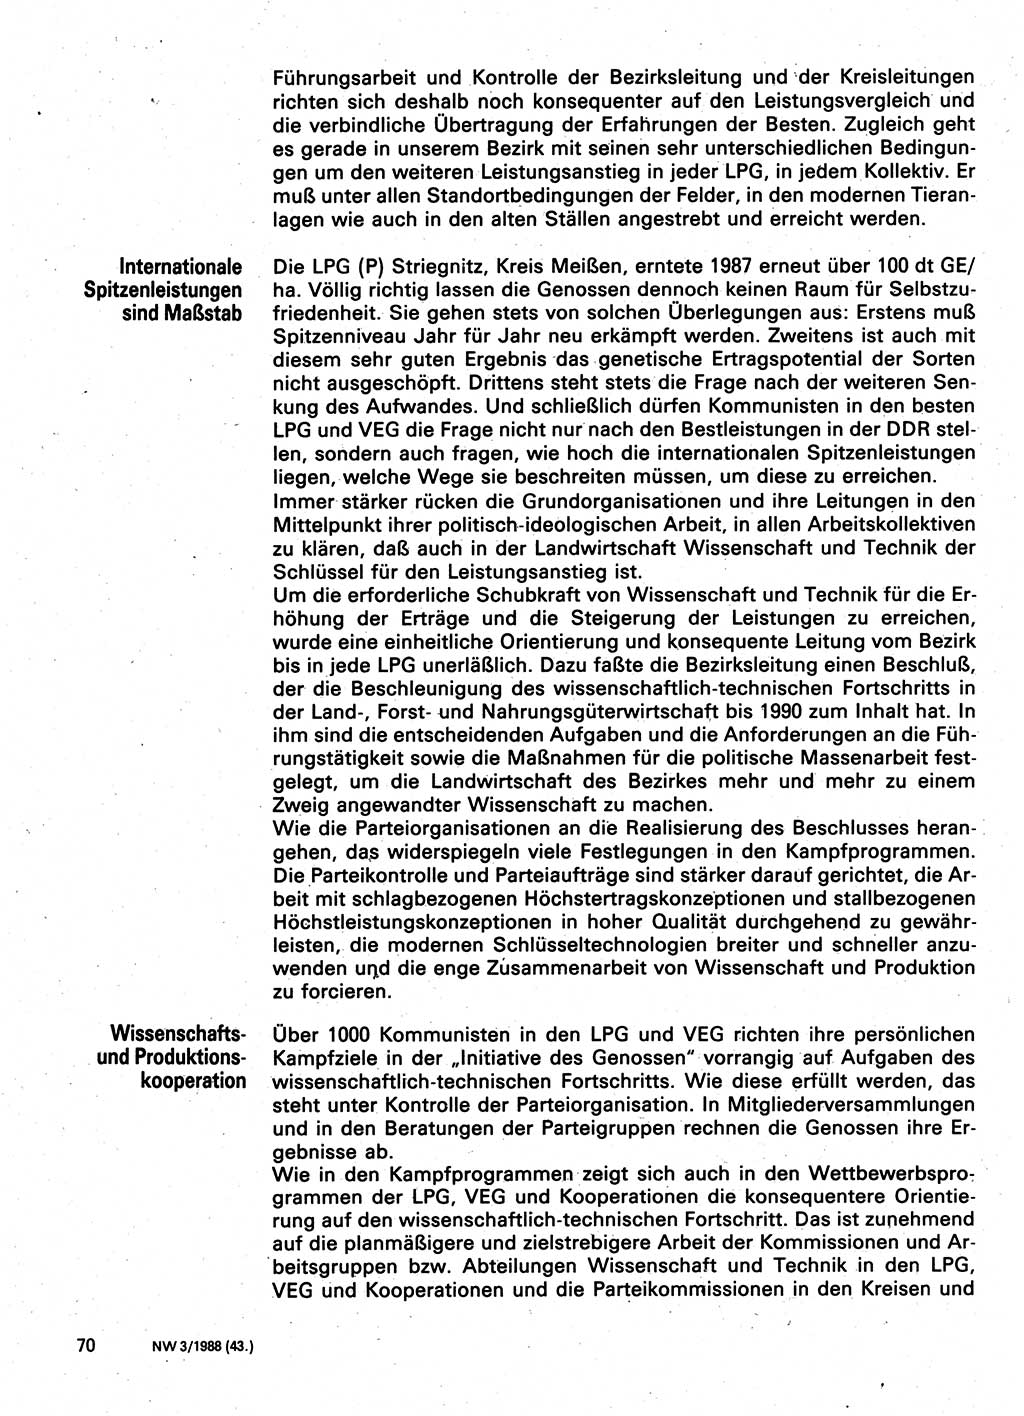 Neuer Weg (NW), Organ des Zentralkomitees (ZK) der SED (Sozialistische Einheitspartei Deutschlands) für Fragen des Parteilebens, 43. Jahrgang [Deutsche Demokratische Republik (DDR)] 1988, Seite 70 (NW ZK SED DDR 1988, S. 70)